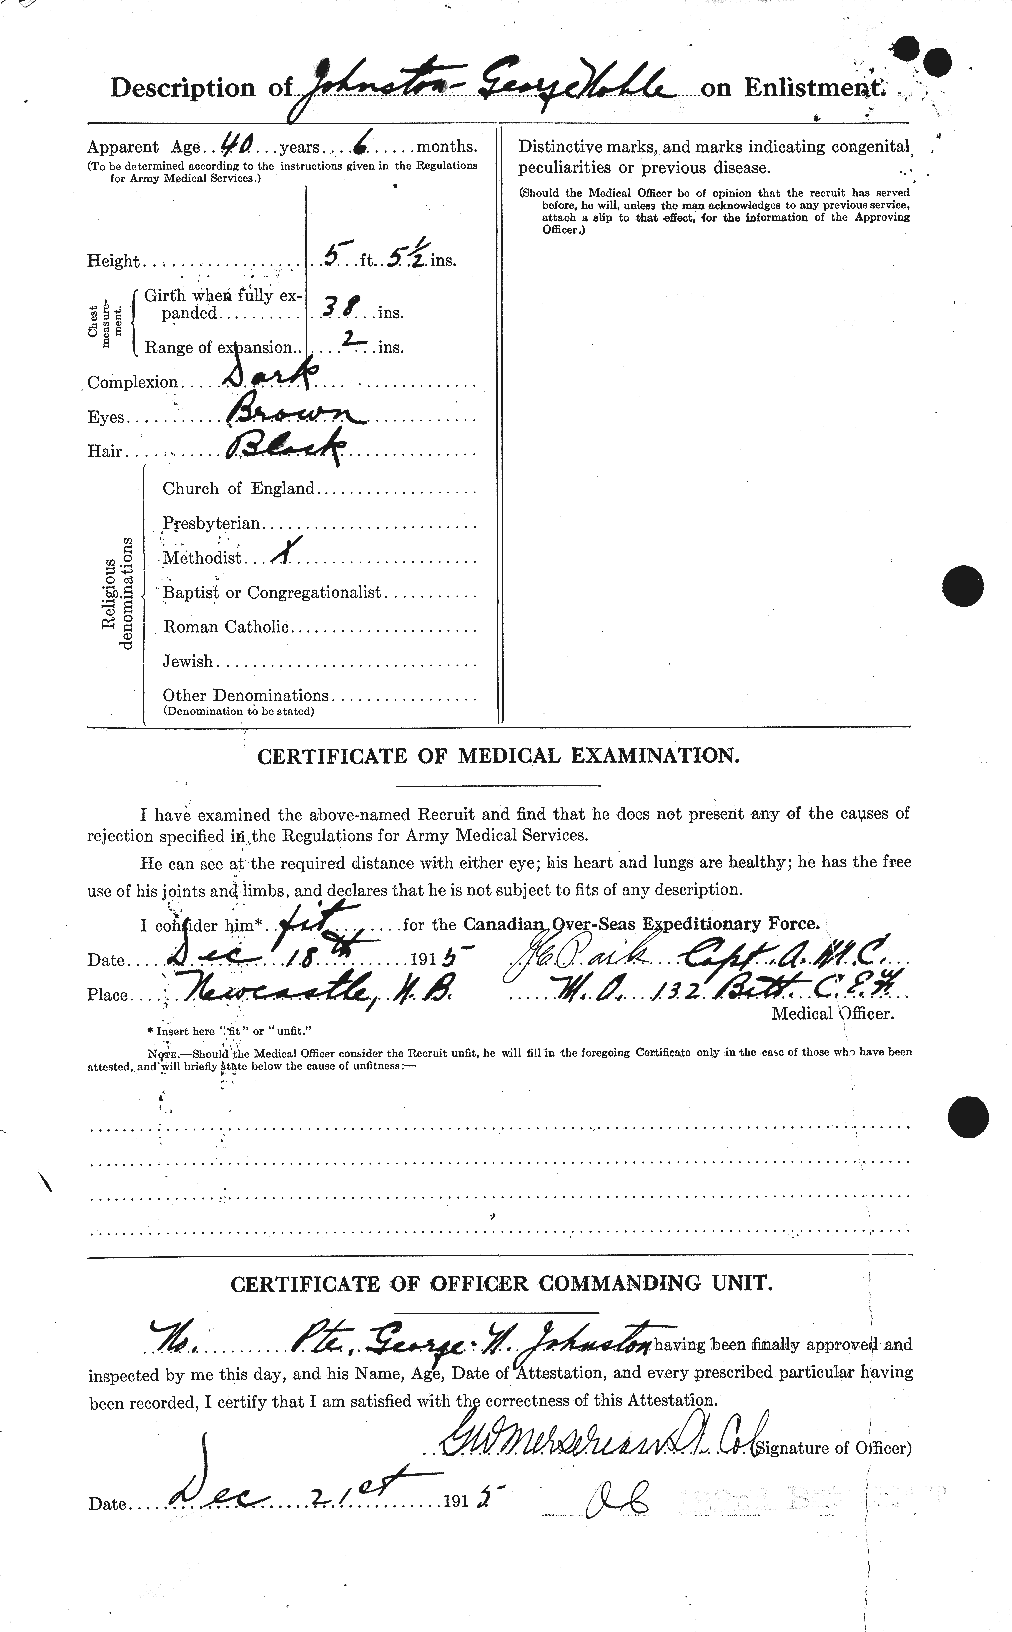 Dossiers du Personnel de la Première Guerre mondiale - CEC 419441b